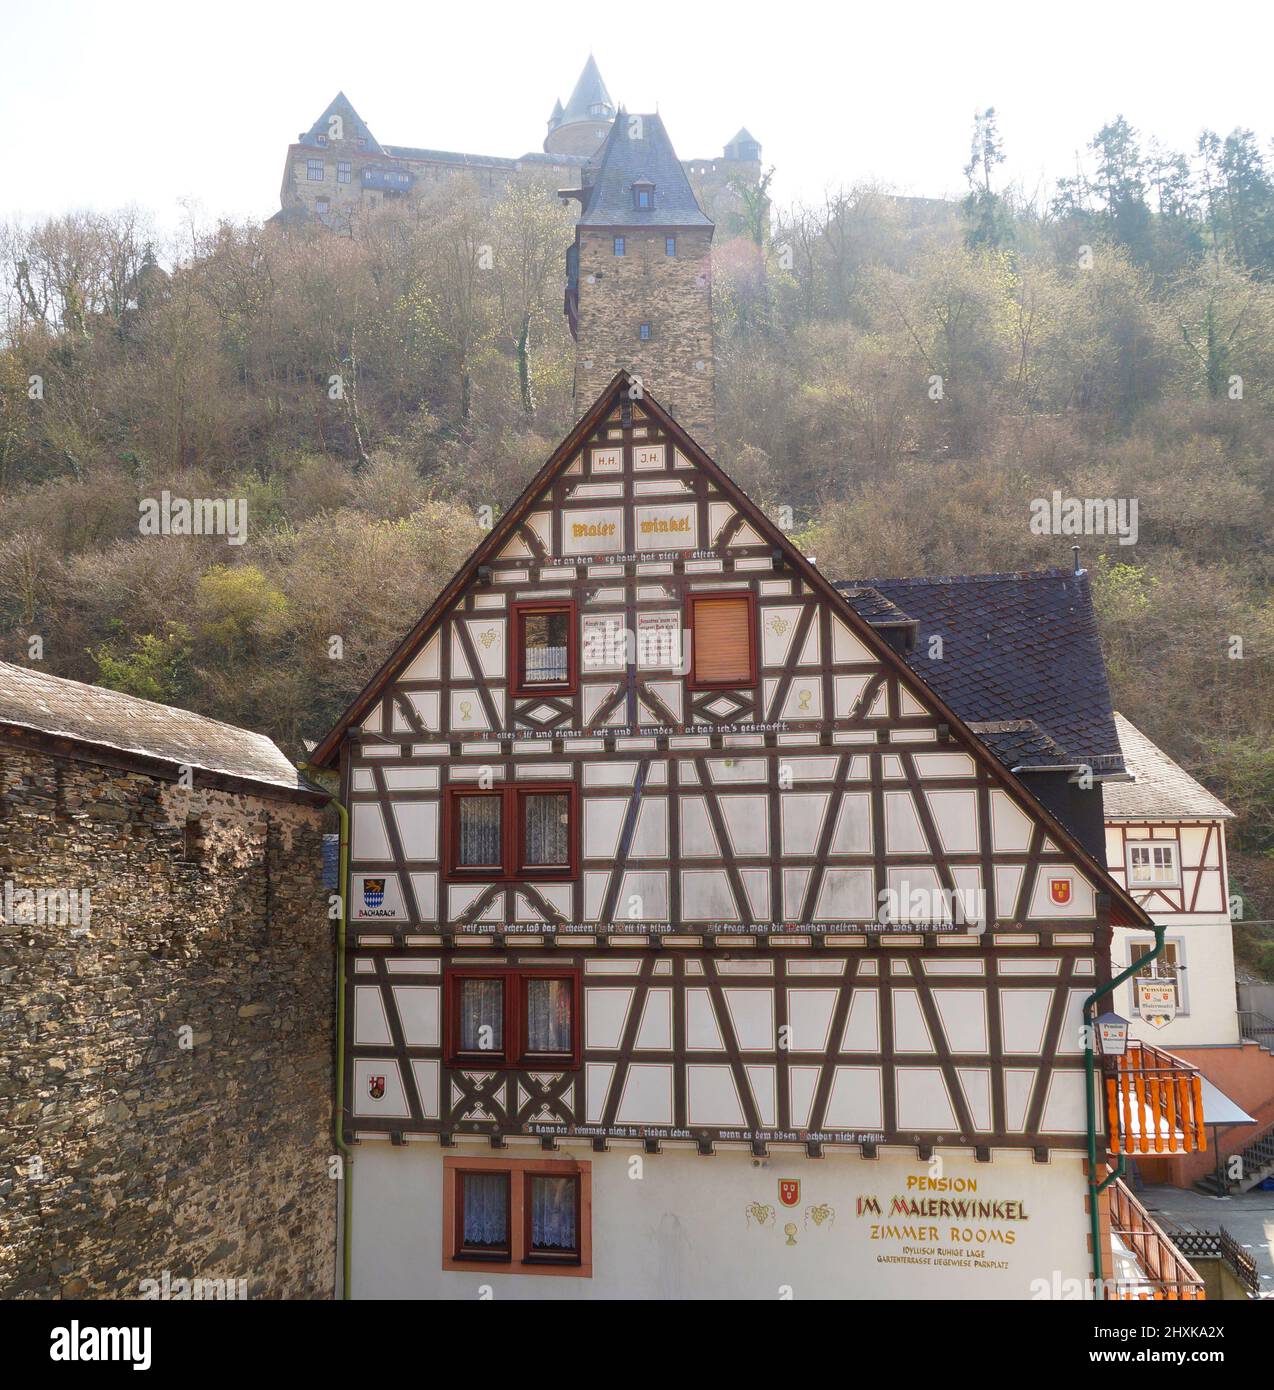 Pintorescas casas de madera de la ciudad de Bacharach en Rhein o Rin en Alemania ( Upper Middle Rhine Valley en Bacharach en Renania-Palatinado) Foto de stock